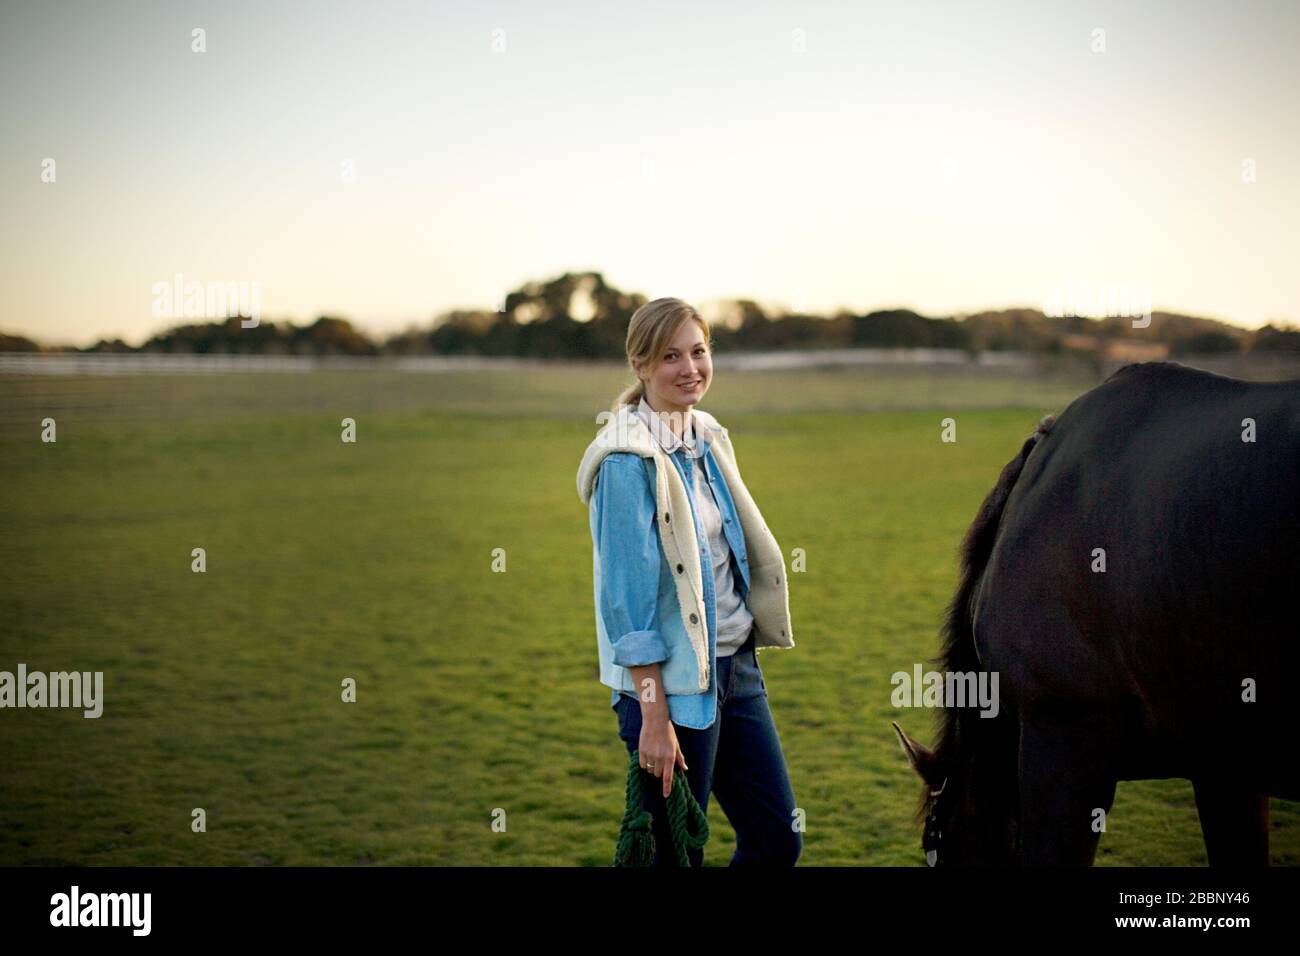 Porträt eines jungen Erwachsenen stehendes Mädchen mit einem Pferd in einem Feld. Stockfoto